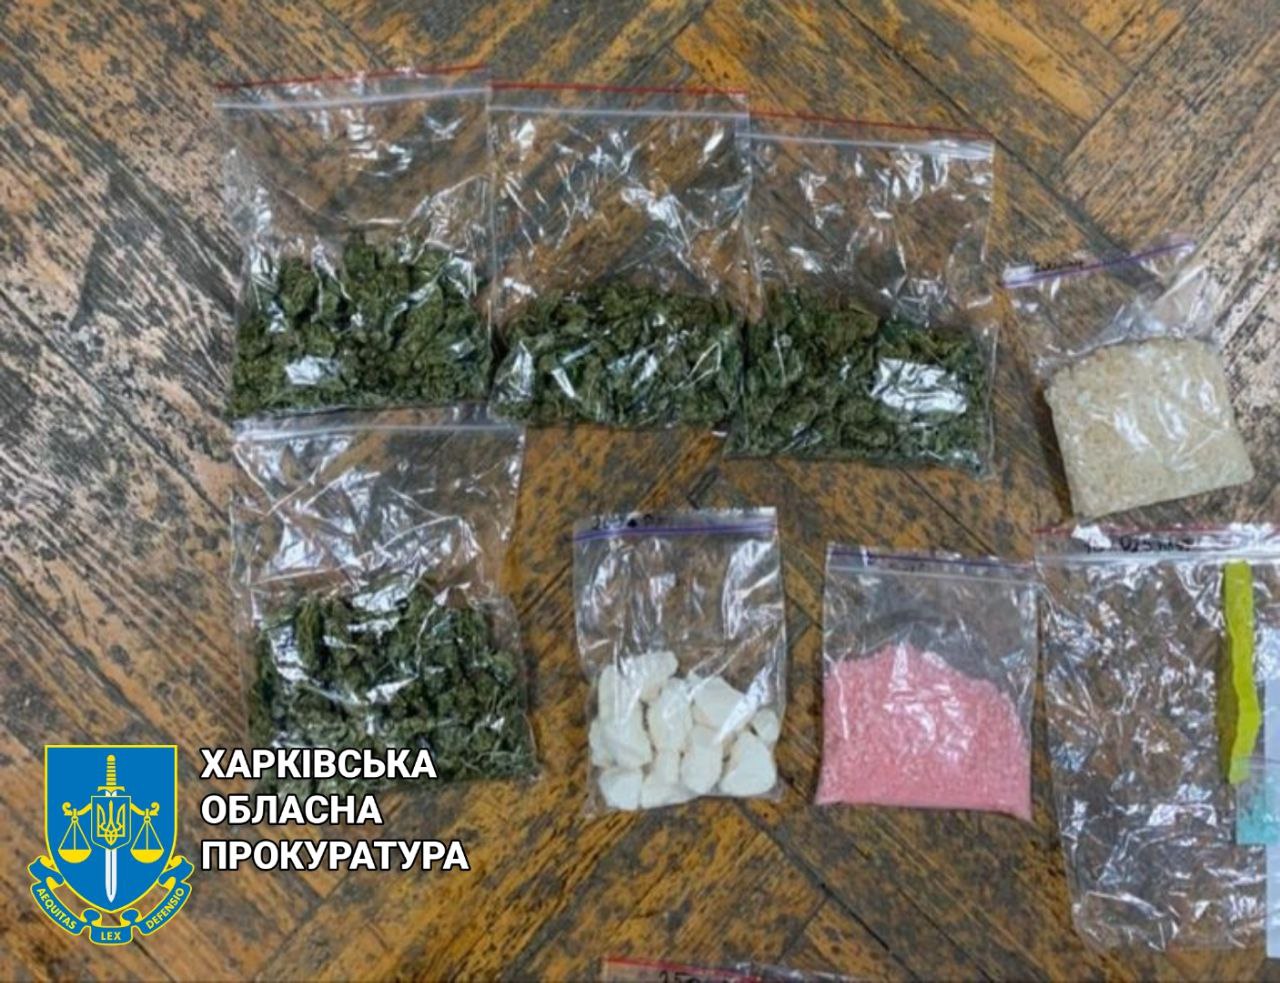 Пойман харьковский закладчик с более чем 800 пакетиками наркотиков